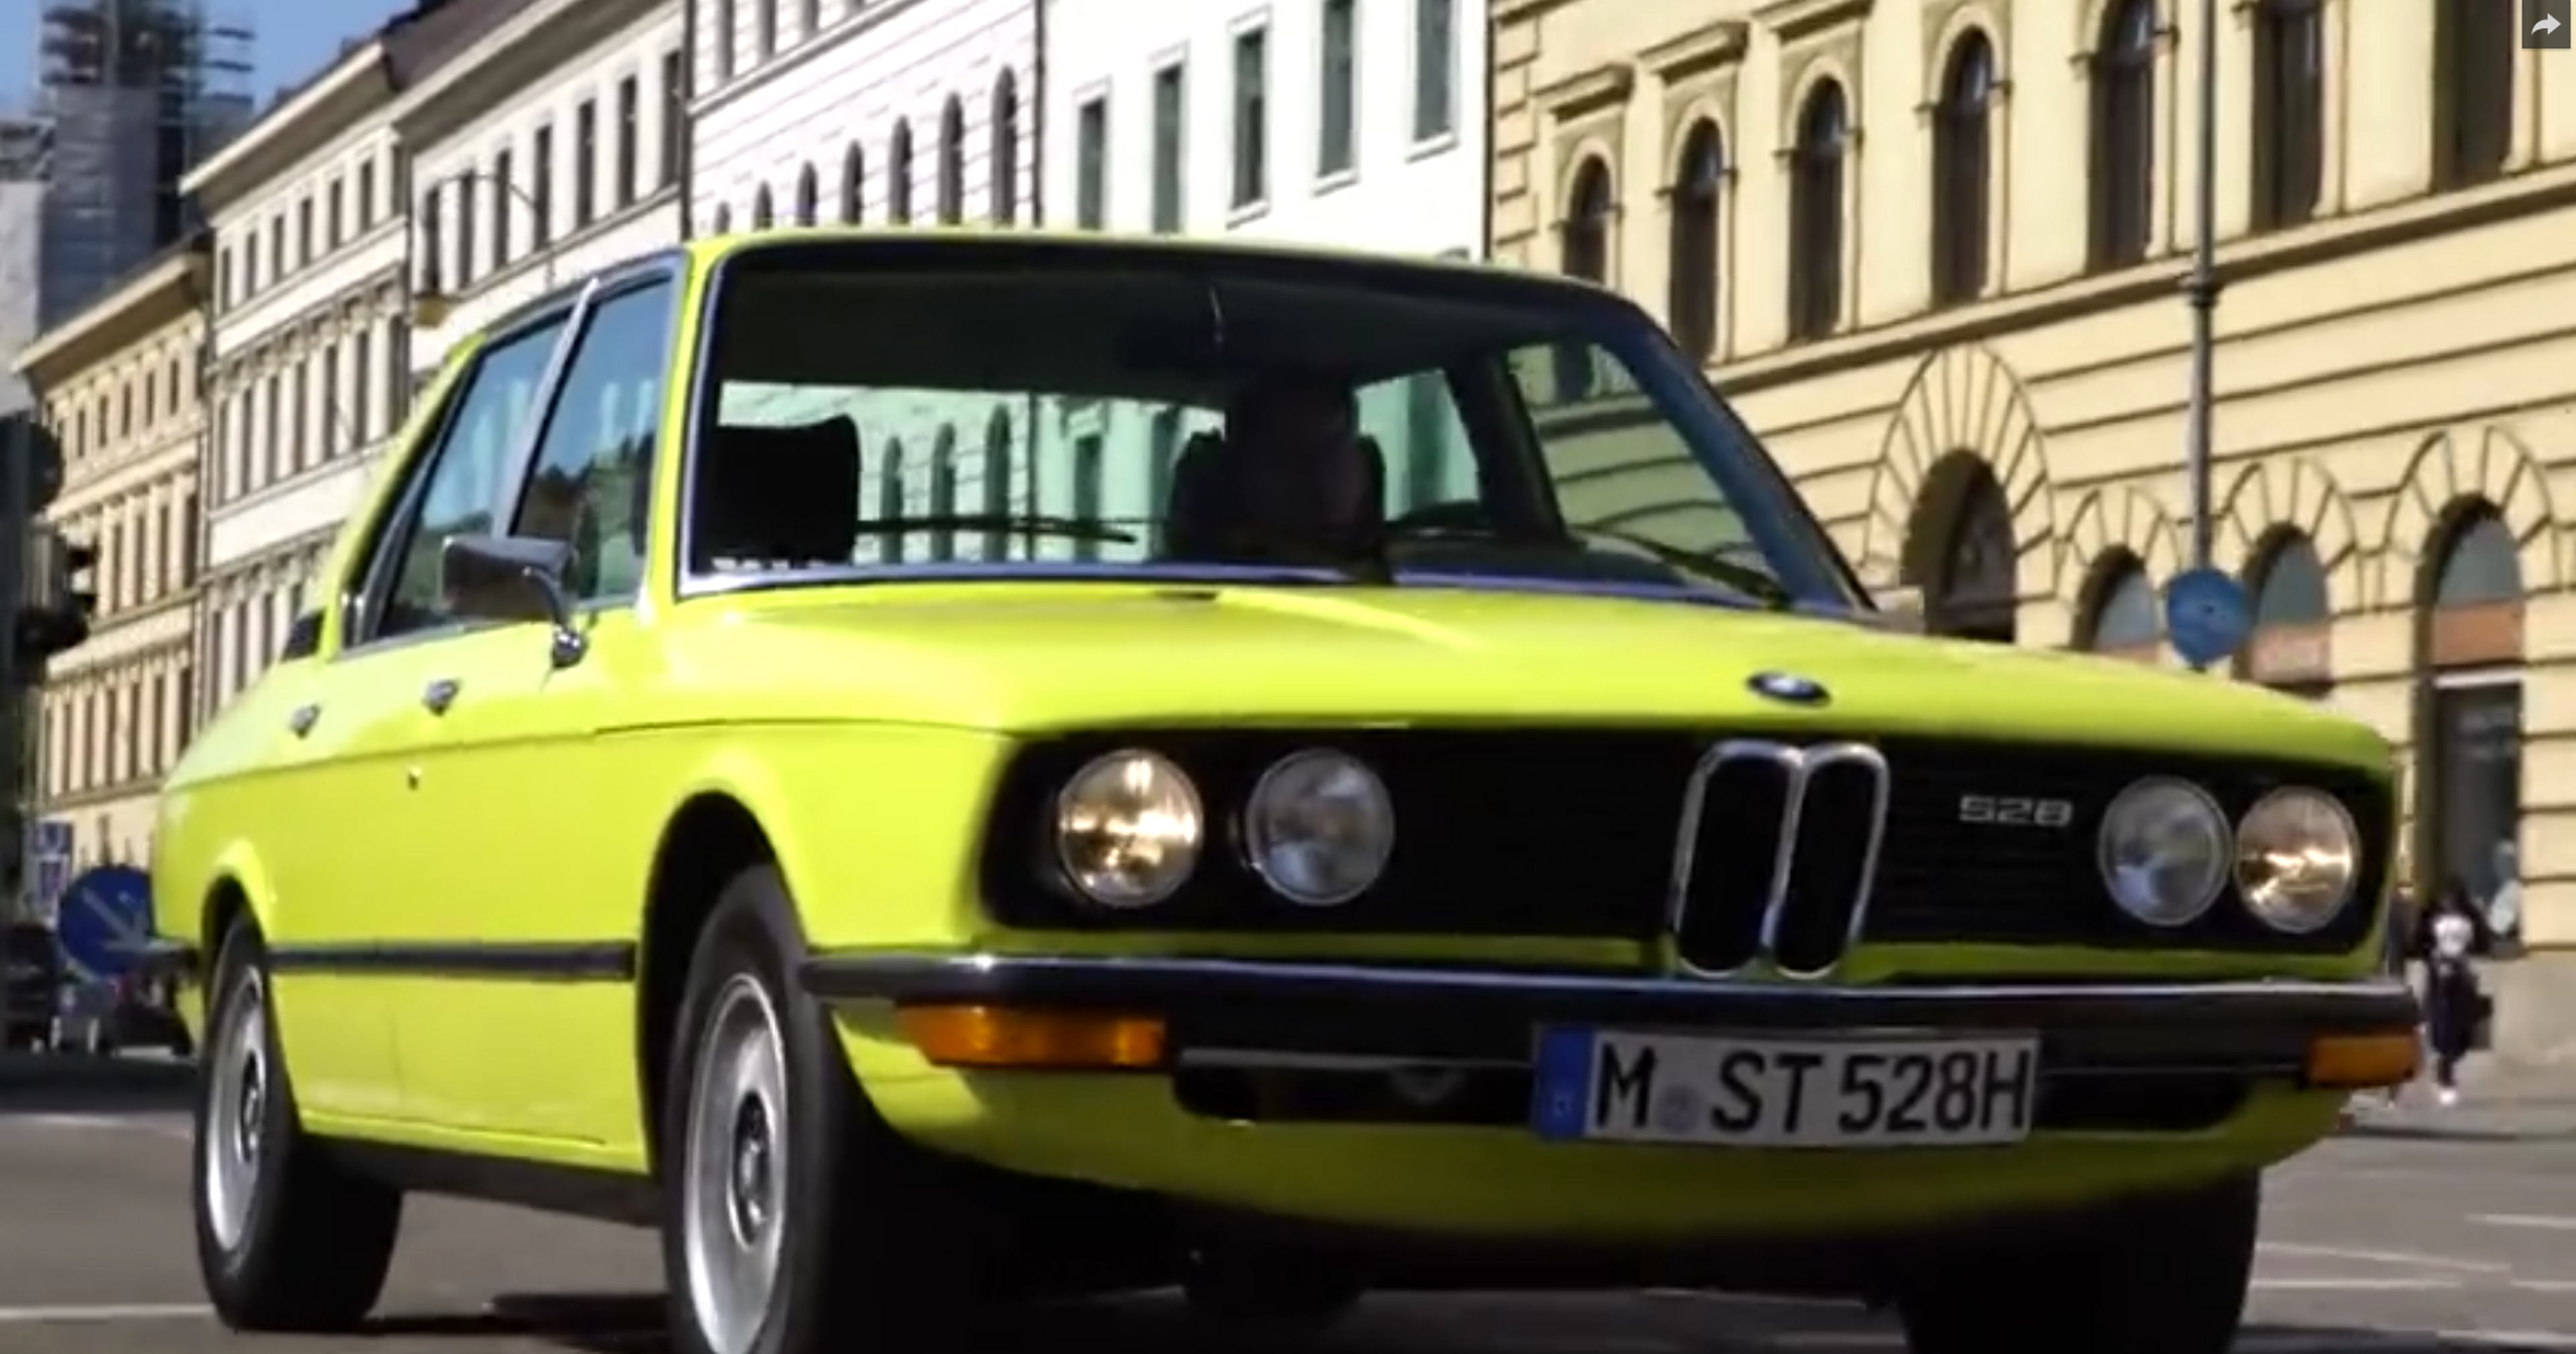 Historia del BMW Serie 5 (primera generación)